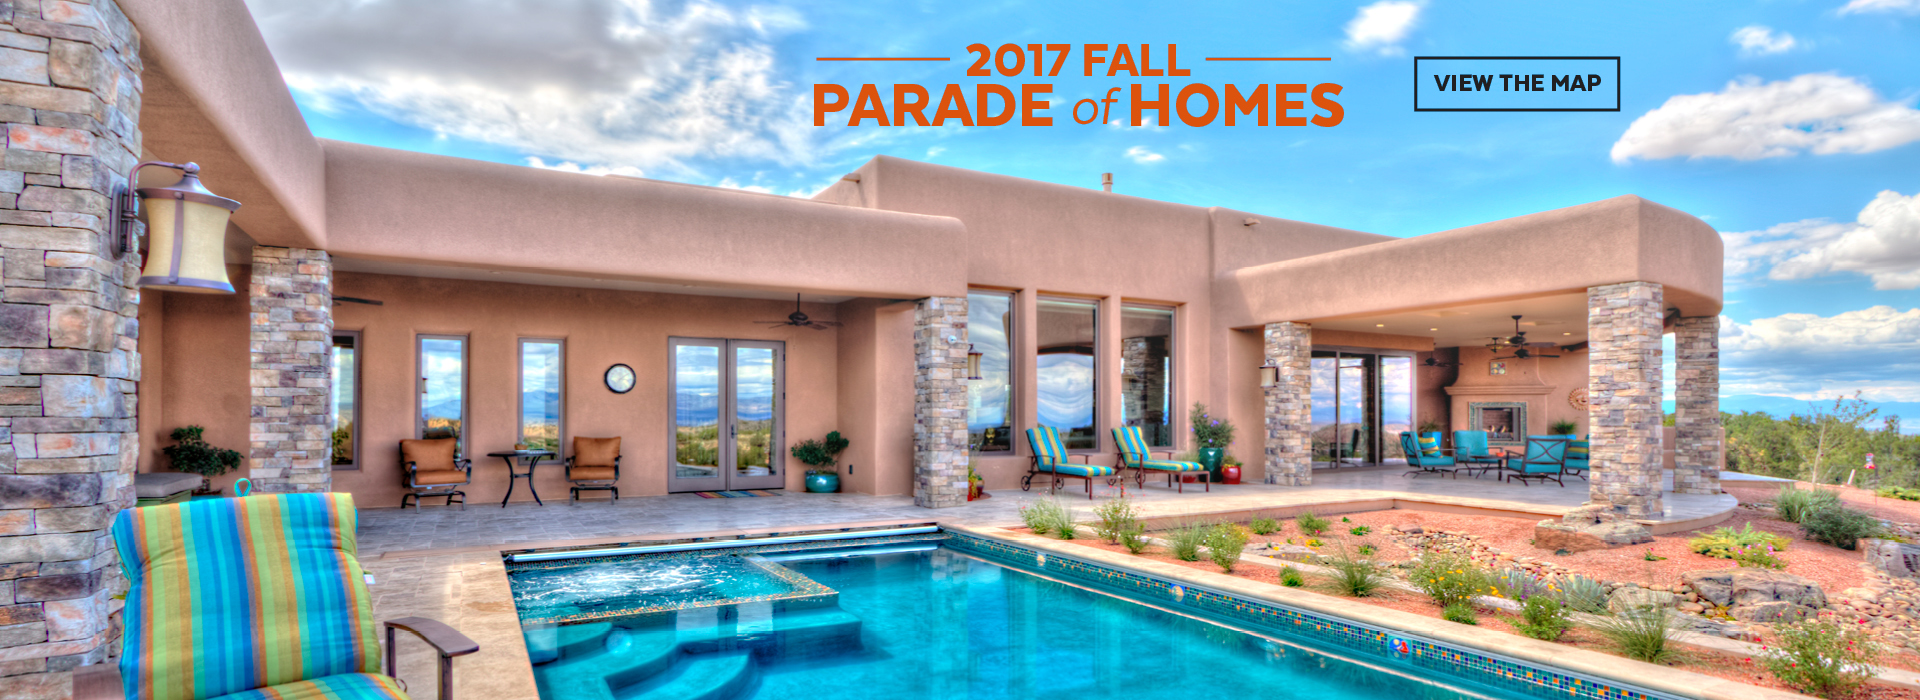 Parade of Homes Albuquerque & New Mexico Fall 2017